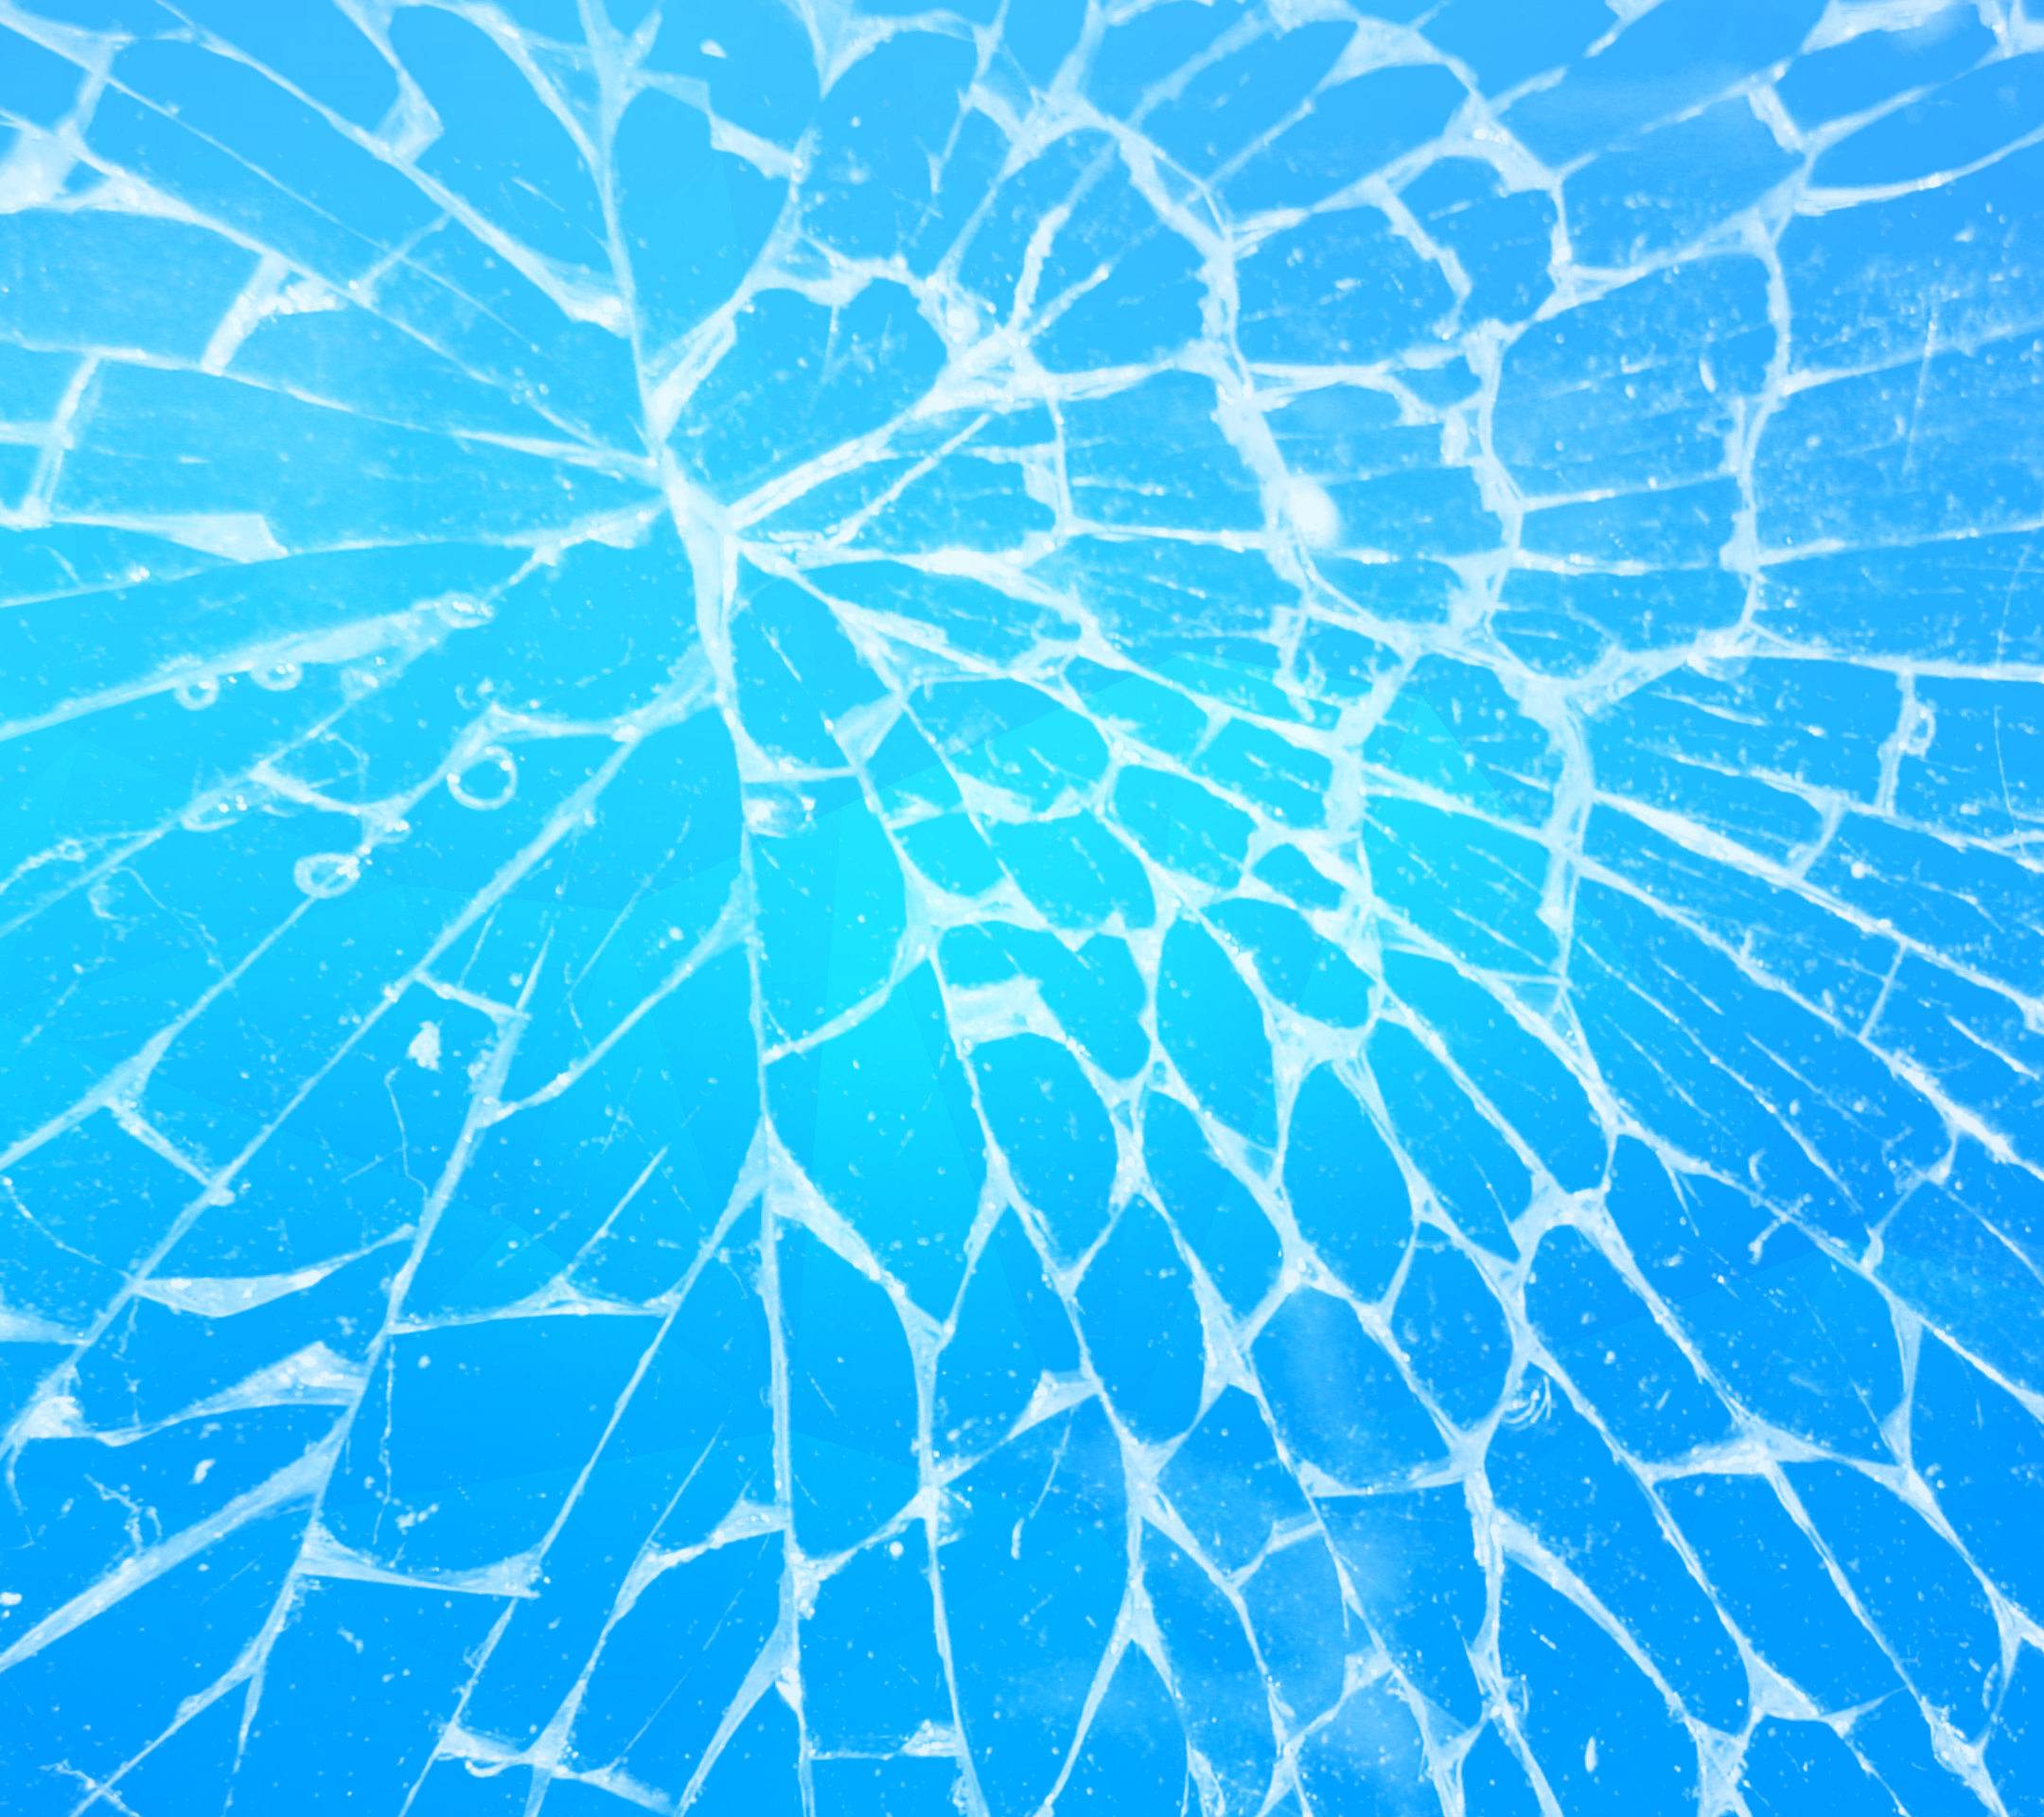 玻璃打碎了 库存图片. 图片 包括有 玻璃, 粉碎, 视窗, 经纪, 证明 - 128542671